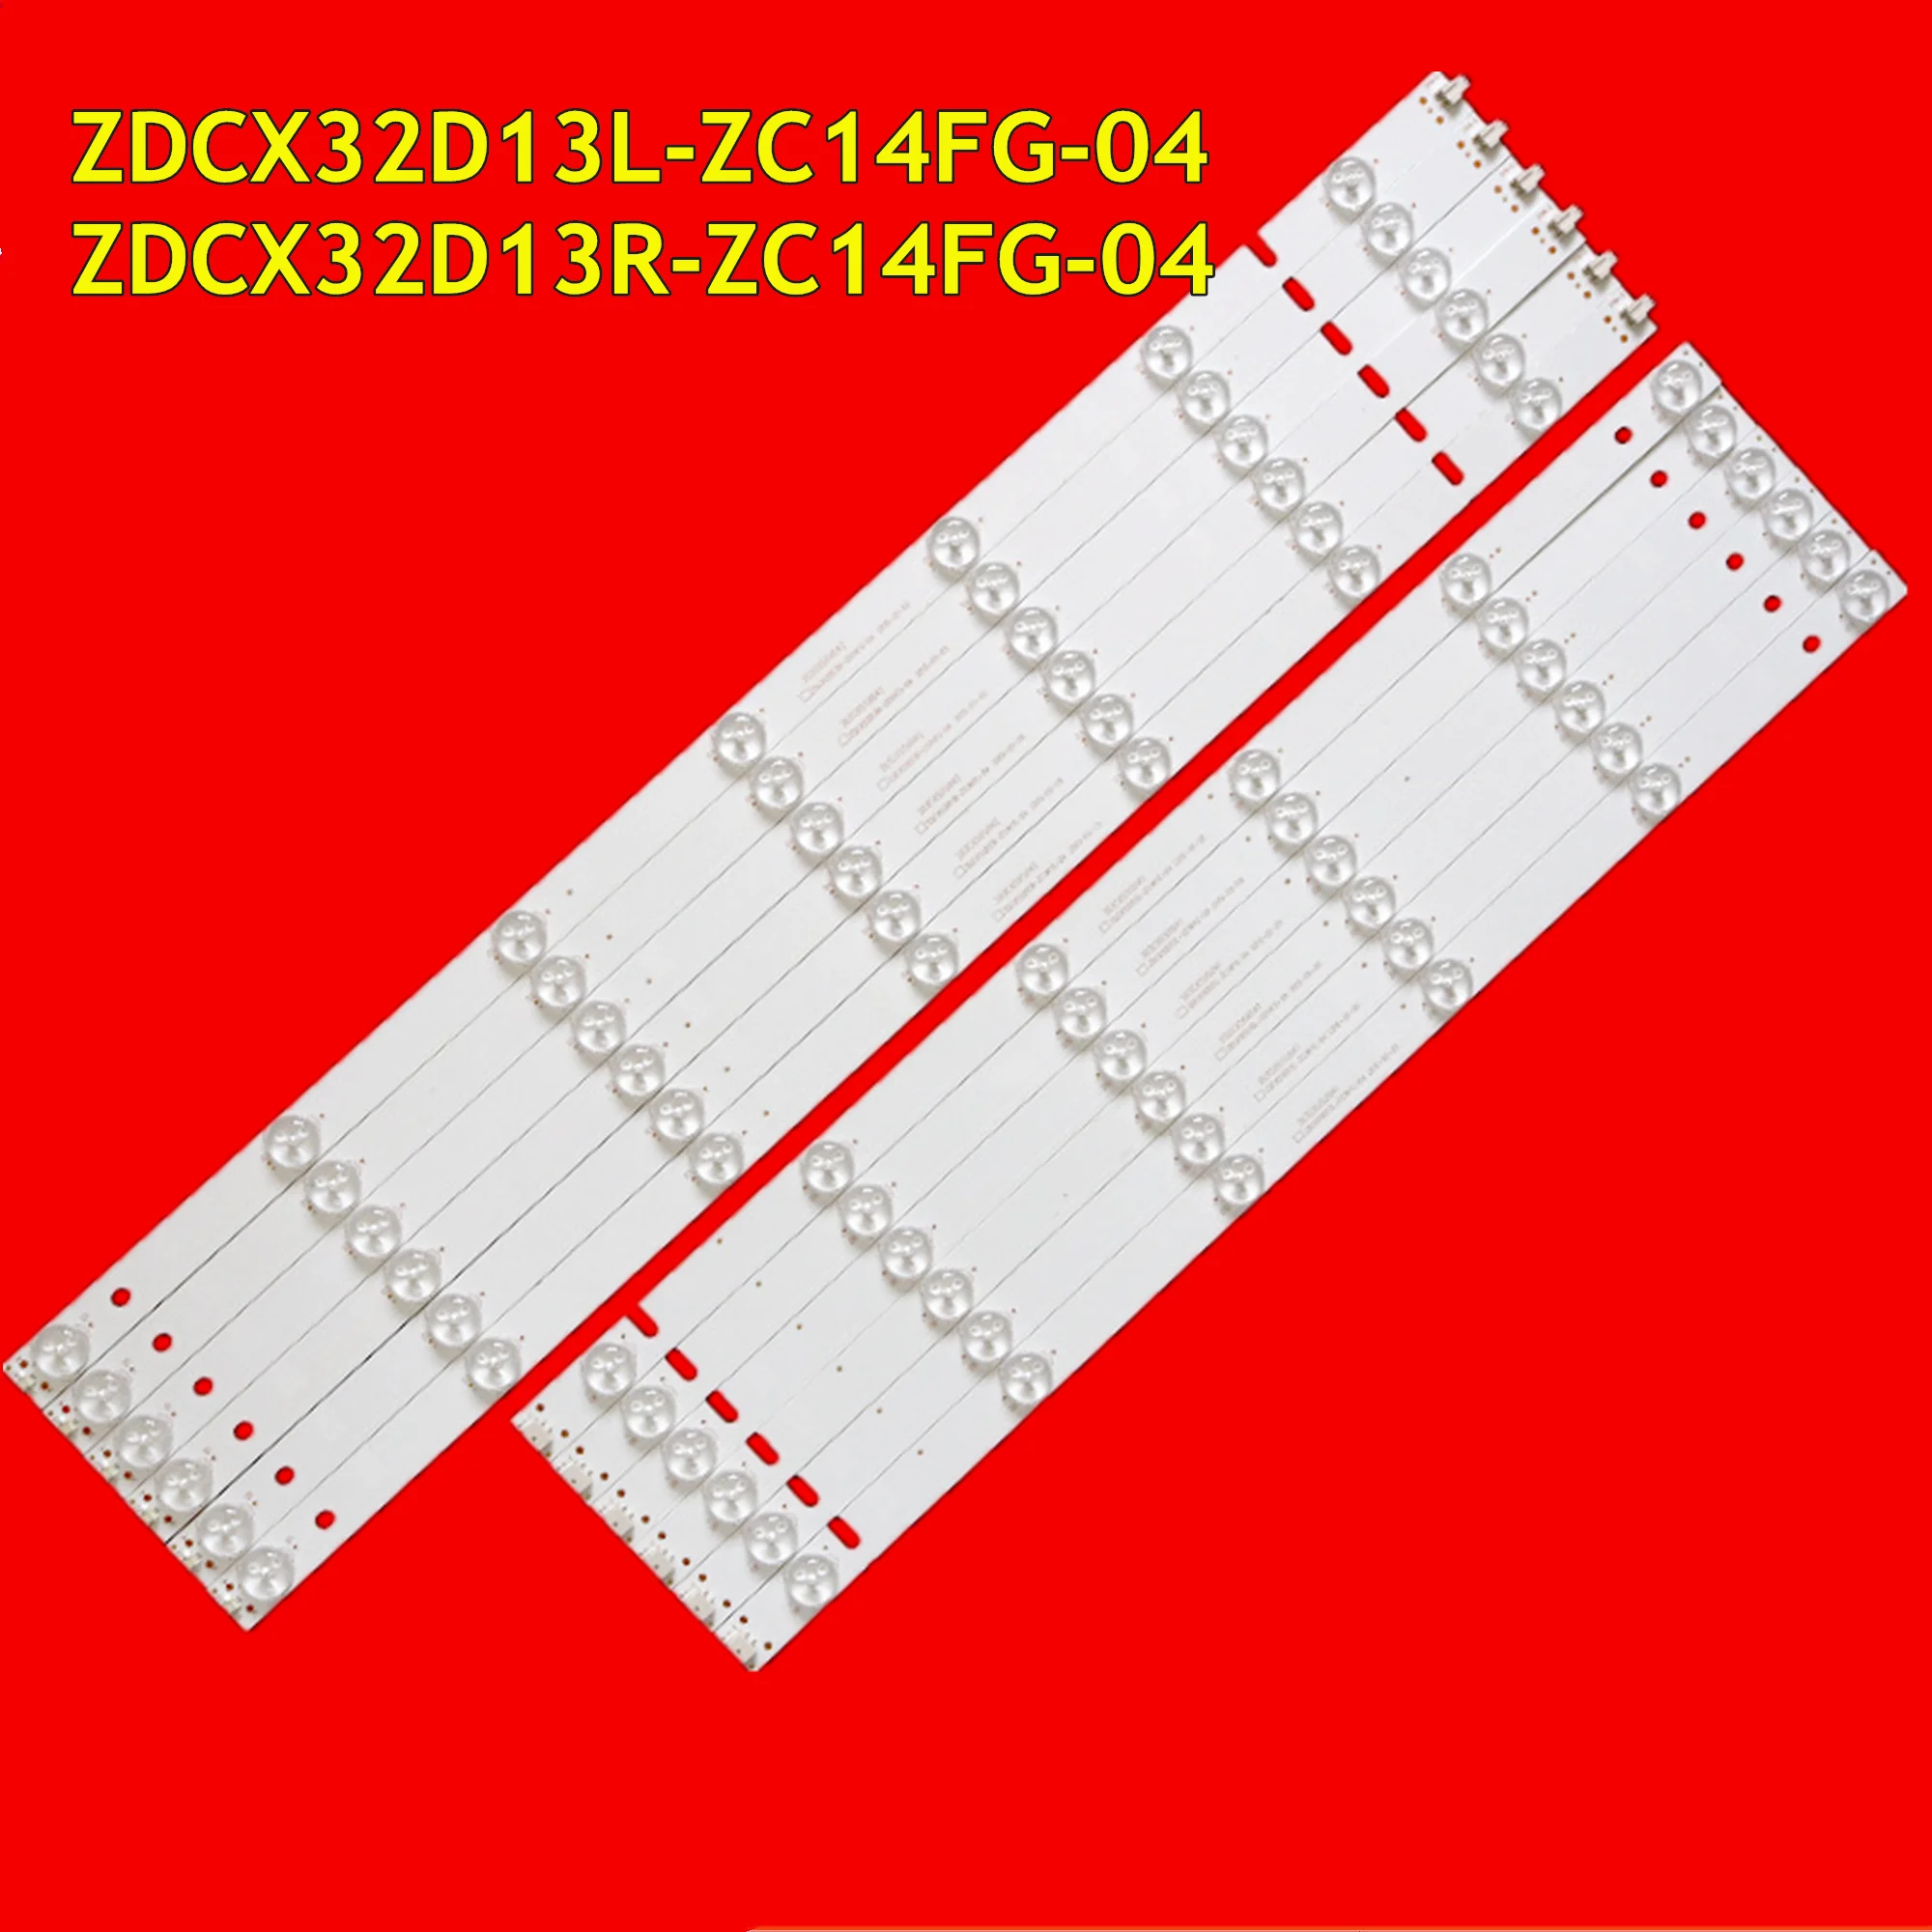 LED TV Ʈ Ʈ ZDCX32D13L-ZC14FG-04 ZDCX32D13R-ZC14FG-04, 303CX550041, 303CX550042